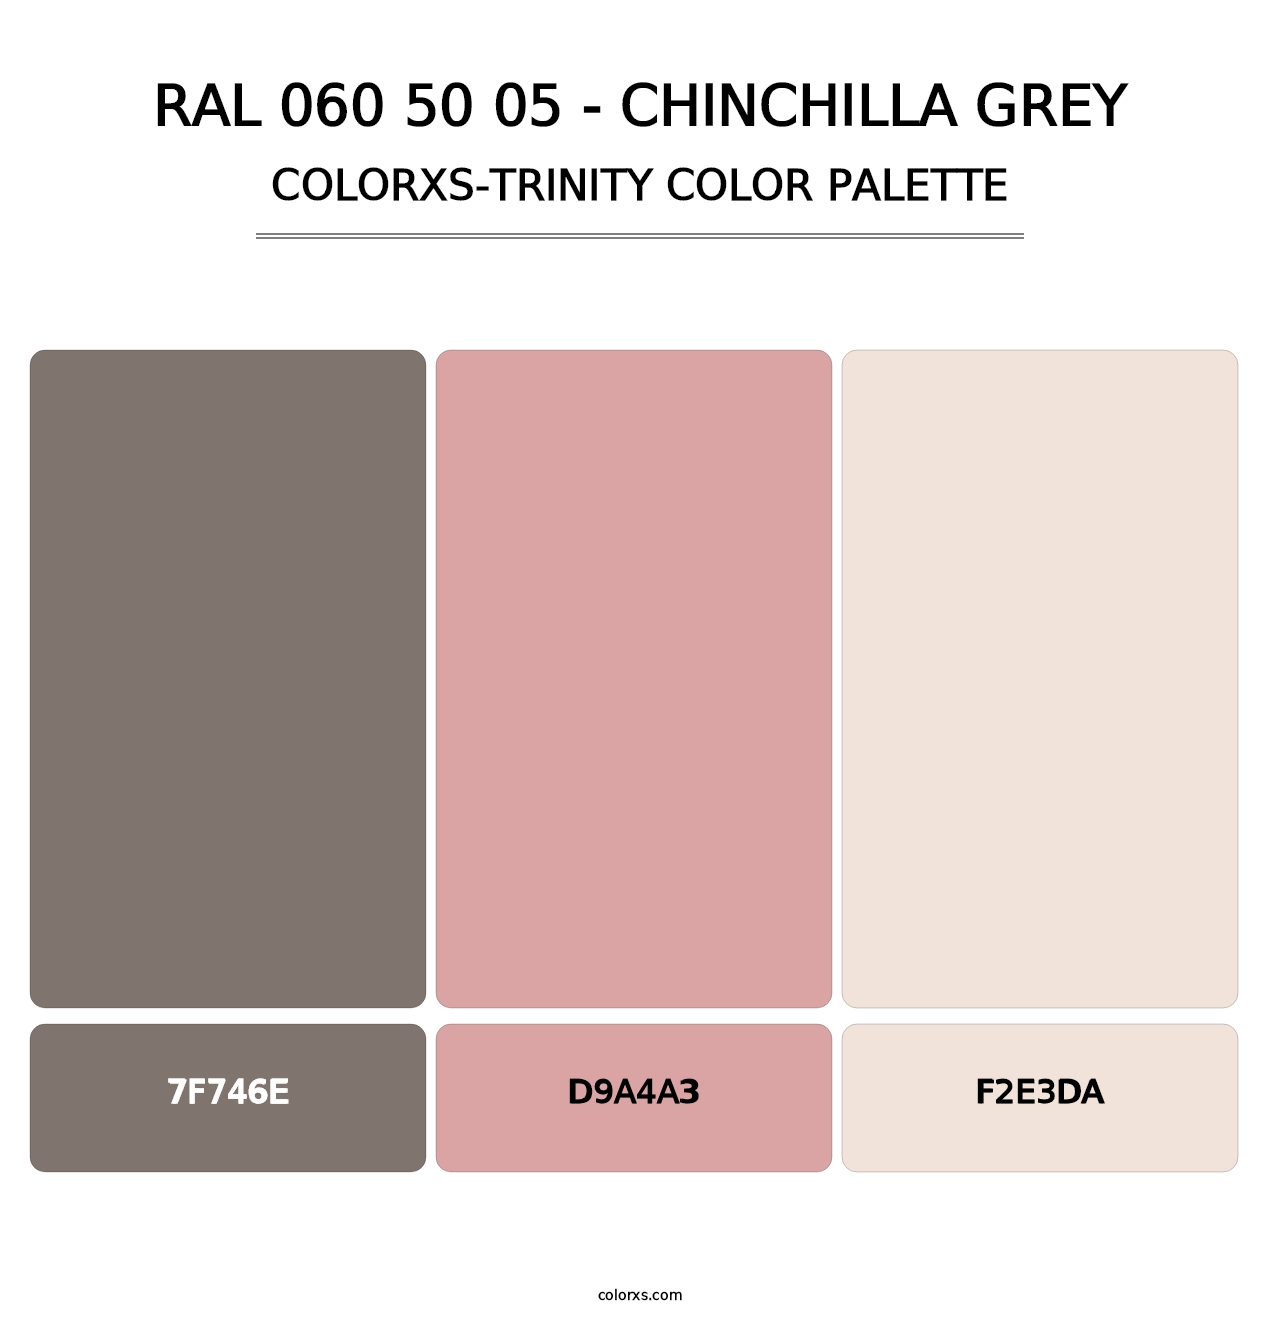 RAL 060 50 05 - Chinchilla Grey - Colorxs Trinity Palette